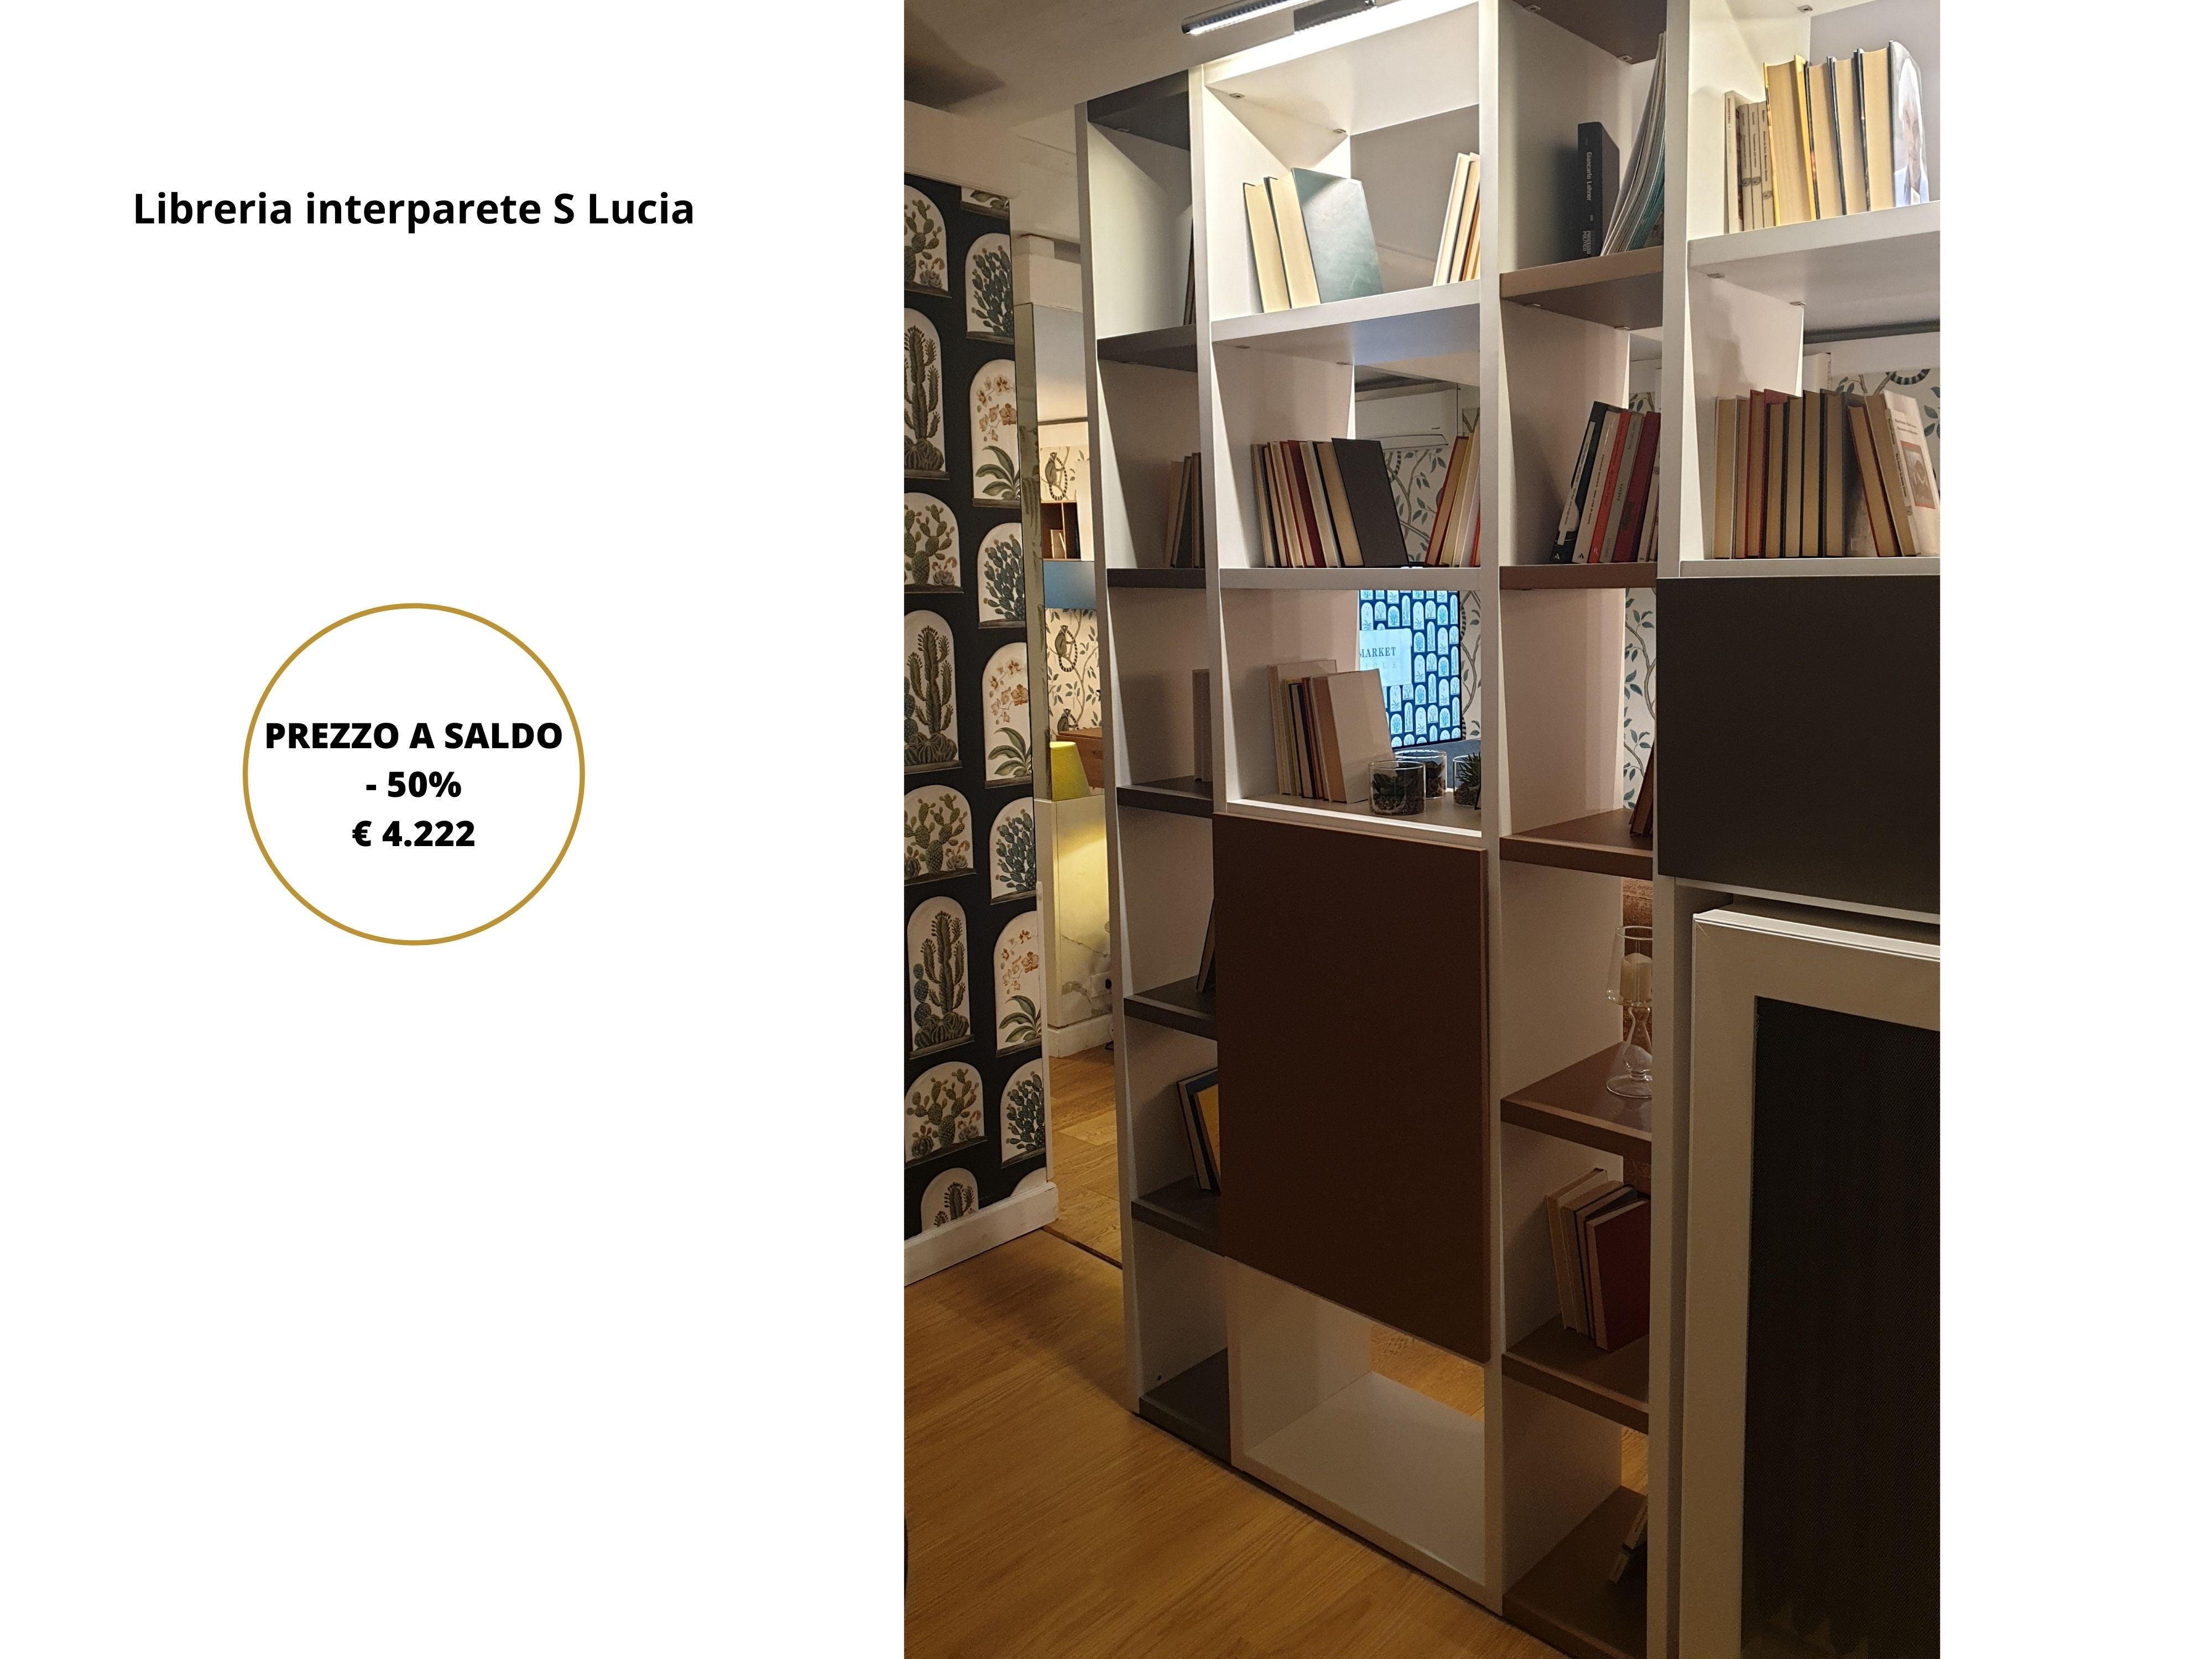 Libreria interparete Santa Lucia - Ambiente_Zona giorno, Negozio_Boutique Firenze Nord, Nuovi arrivi_Esposizione - Expo - Mobilmarket